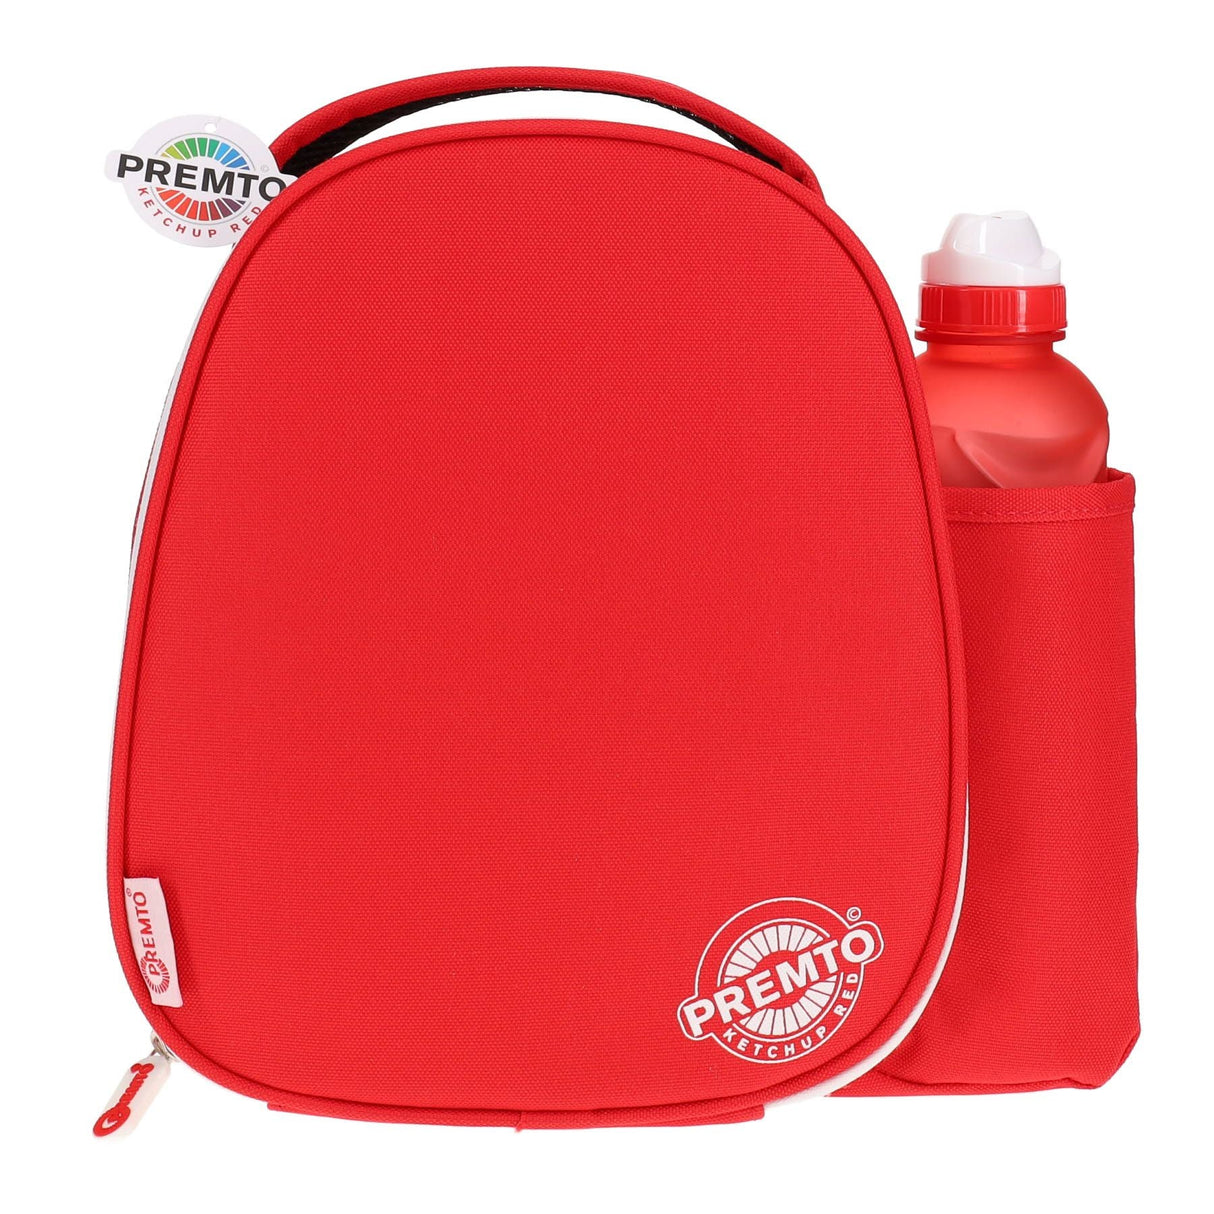 Premto Lunch Bag - Ketchup Red | Stationery Shop UK